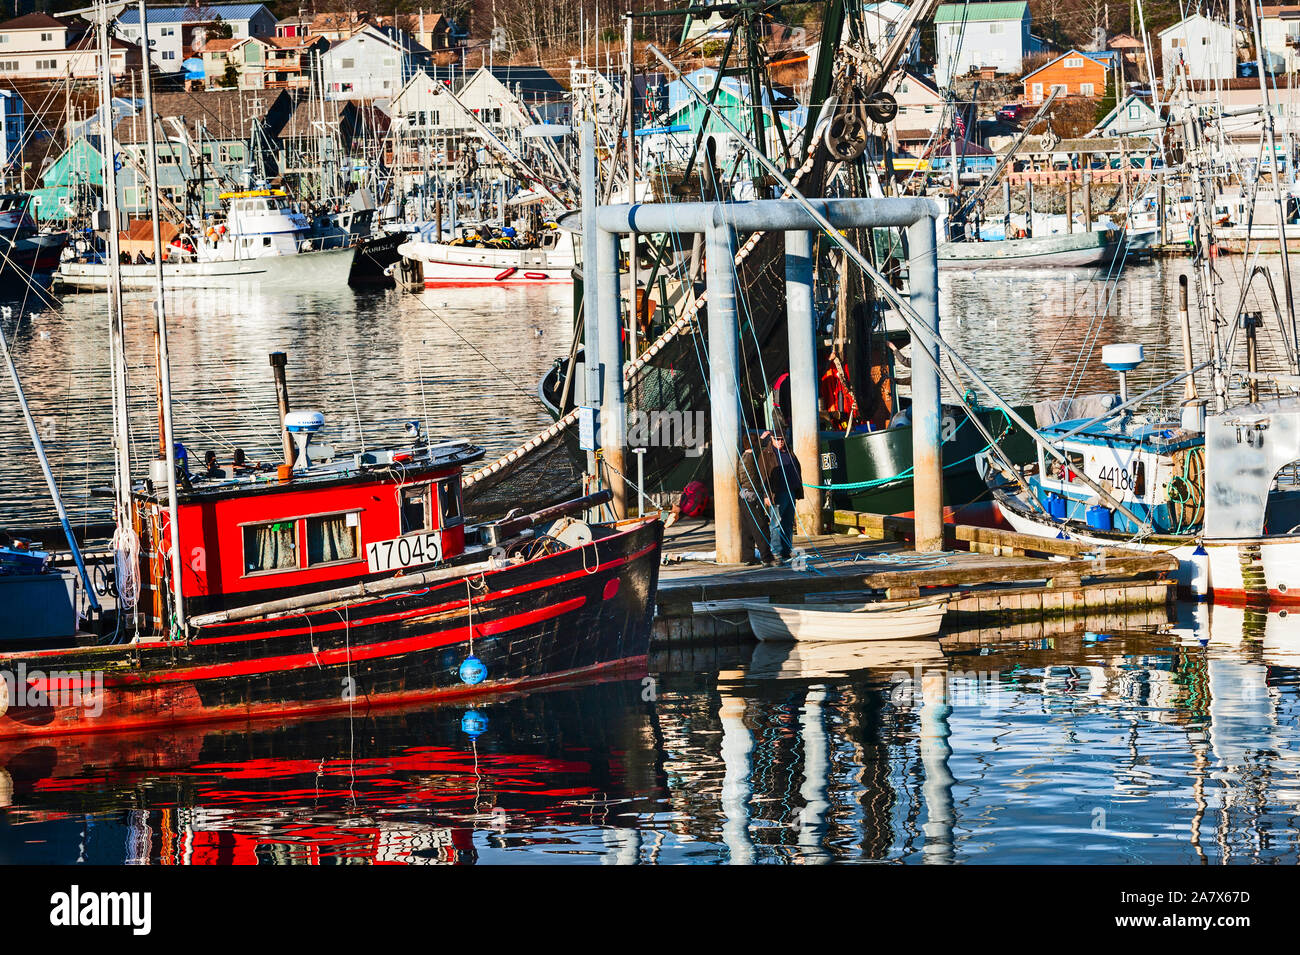 La pesca commerciale troller ancorata al piano di lavoro della piattaforma in Sitka, Alaska, Stati Uniti d'America. Sitka è un Alaskan city e borough vicino a Juneau, la capitale dello stato. Foto Stock